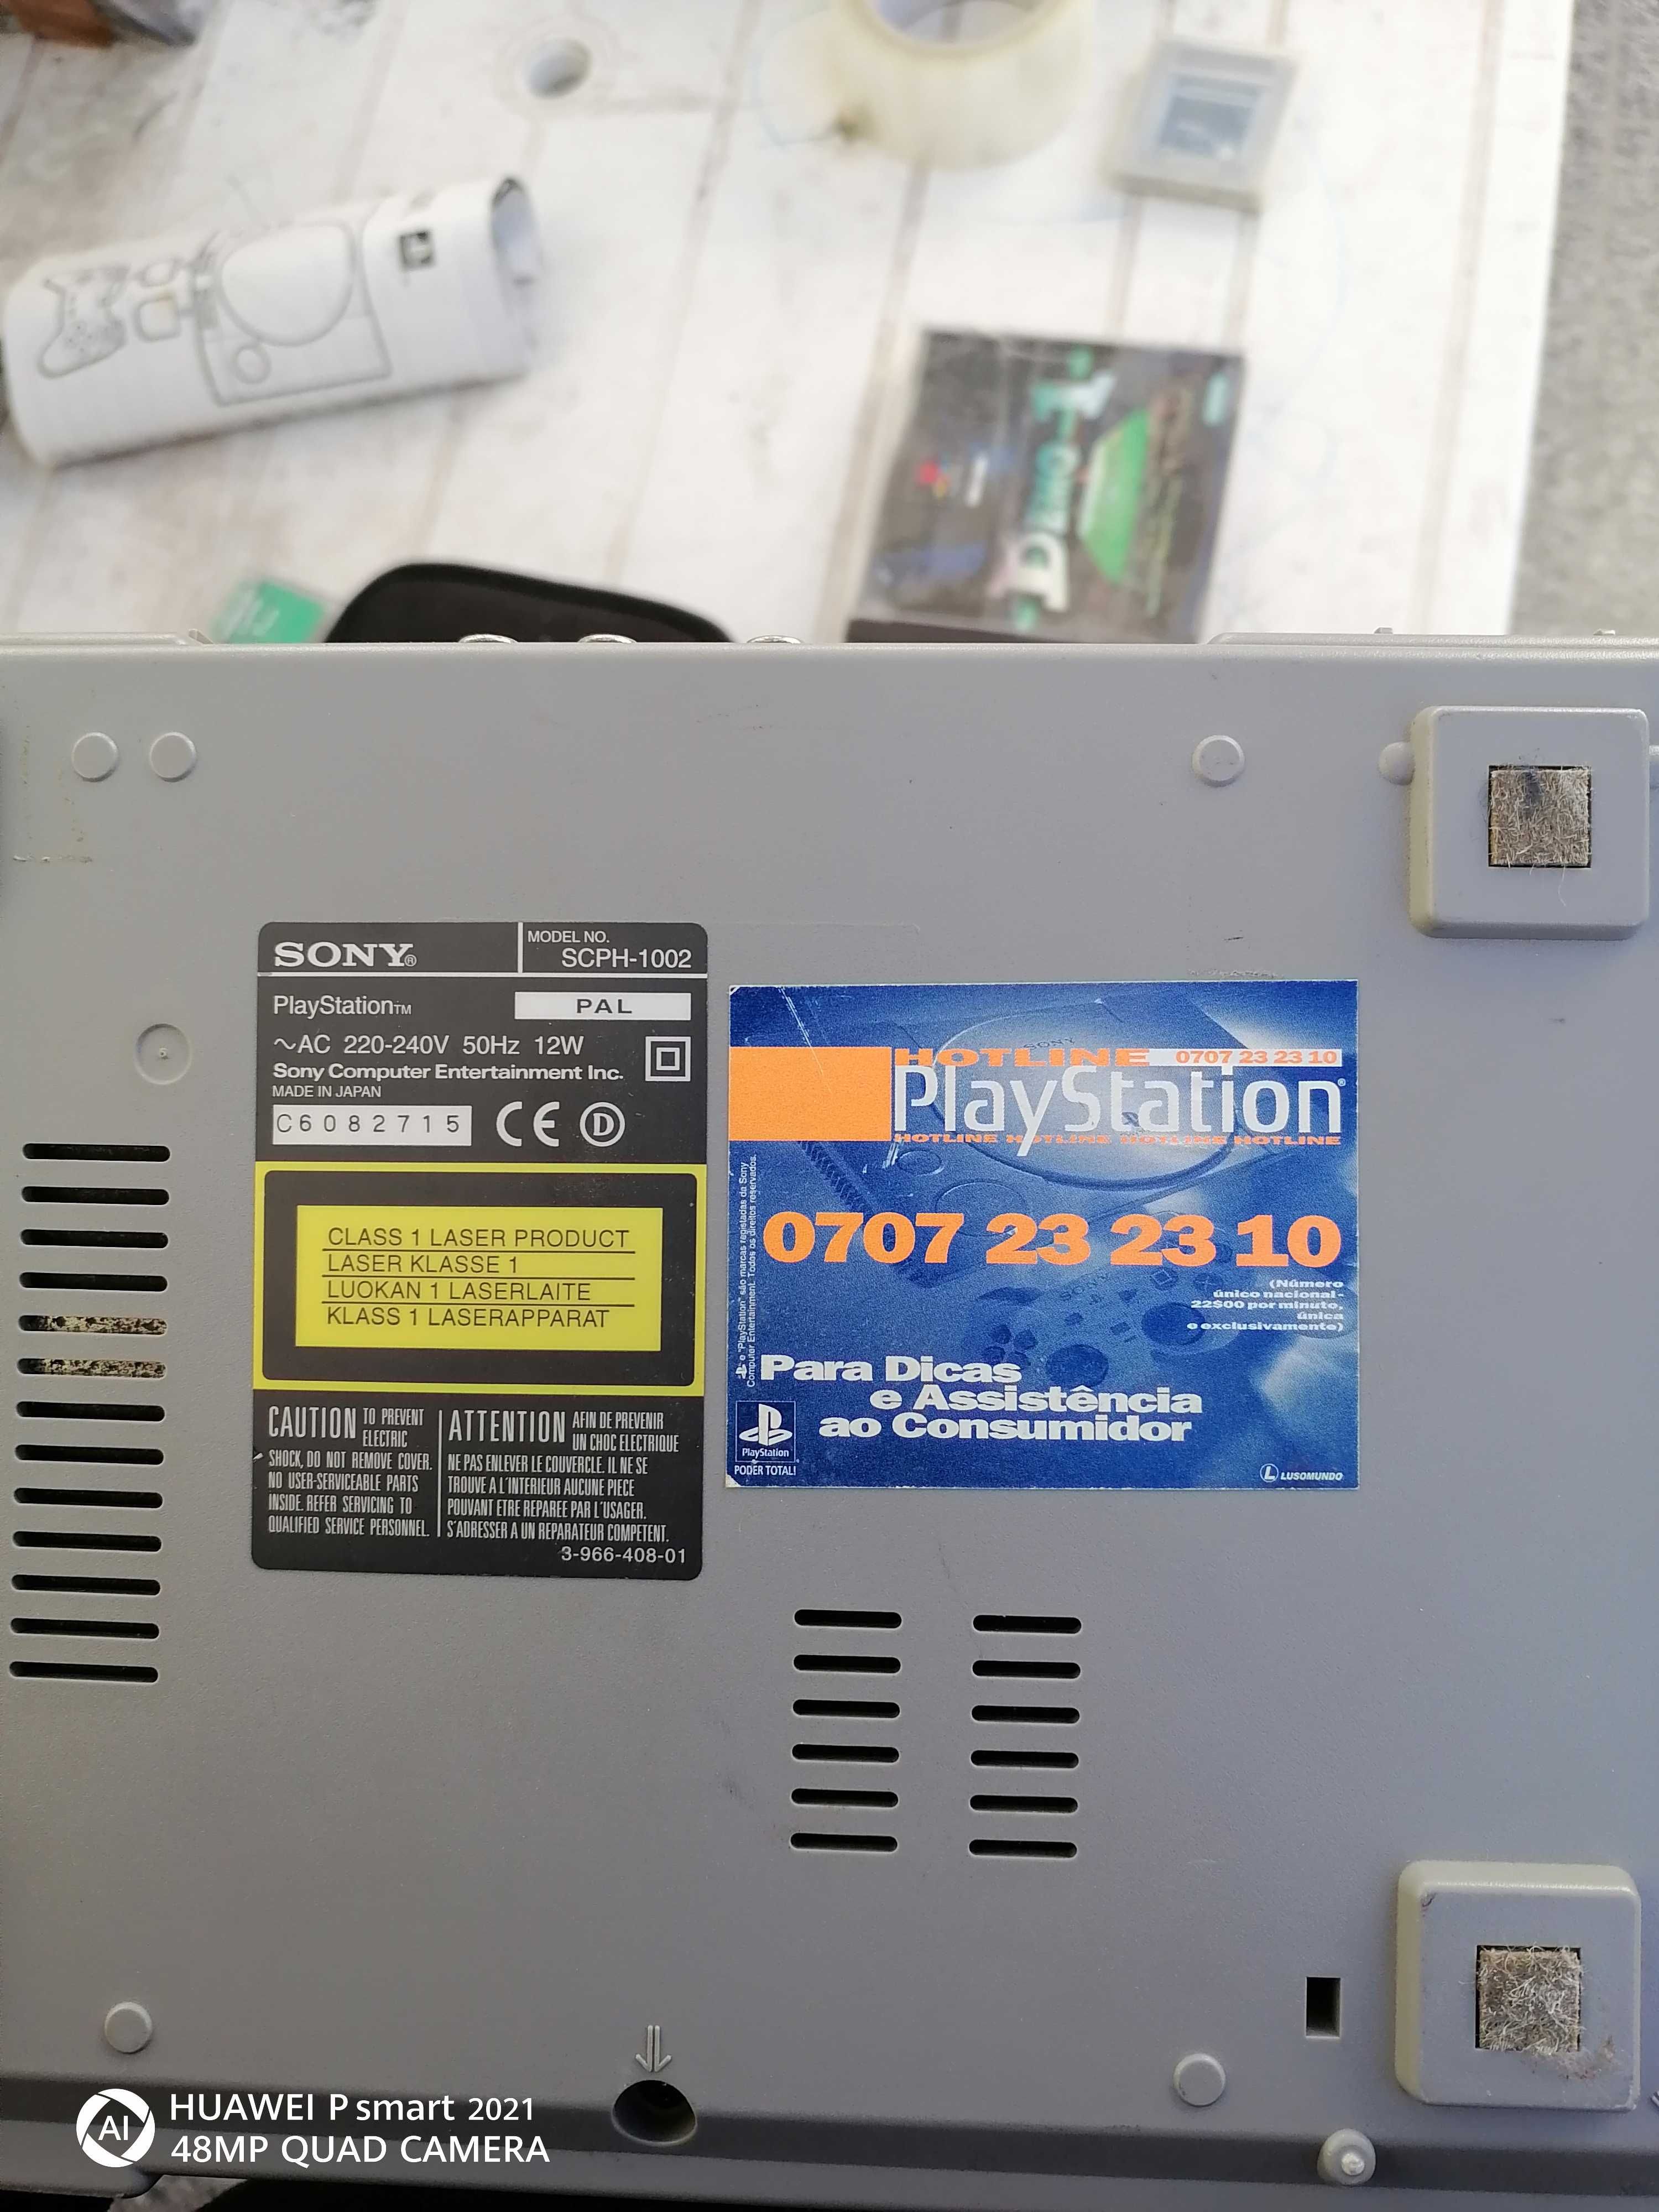 Sony PlayStation PS1